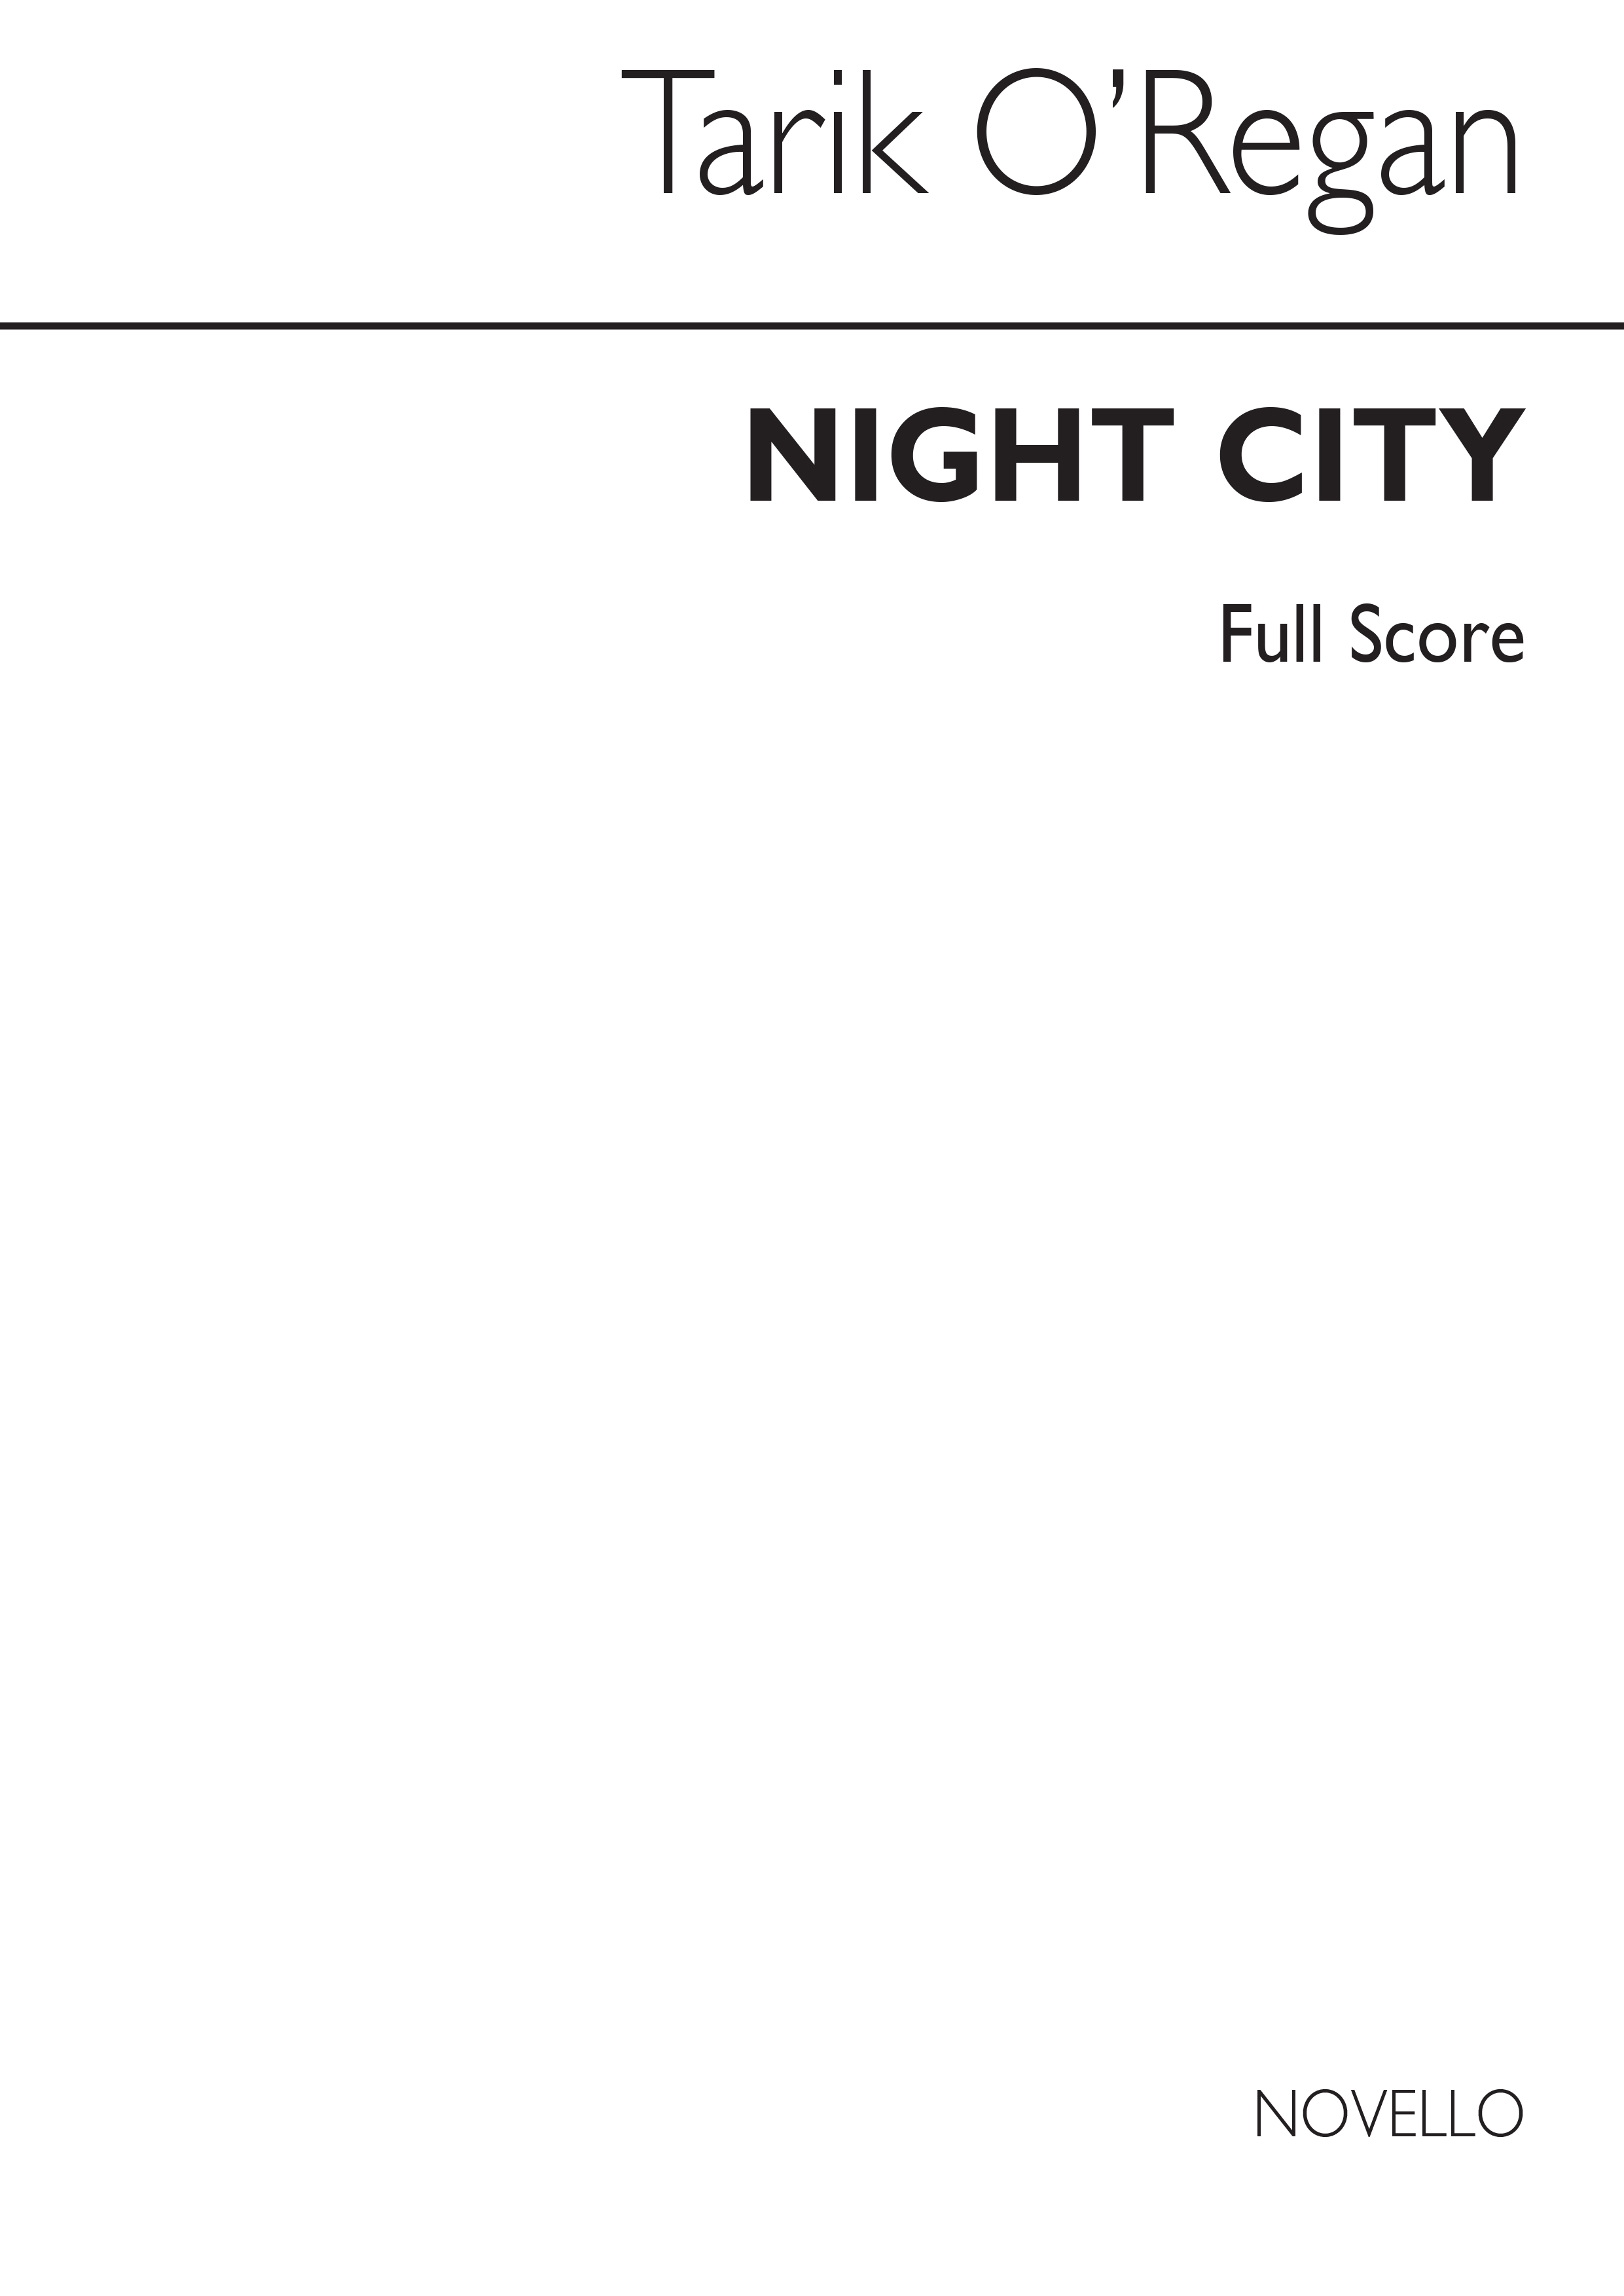 Tarik O'Regan: Night City (Full Score): SSA: Score